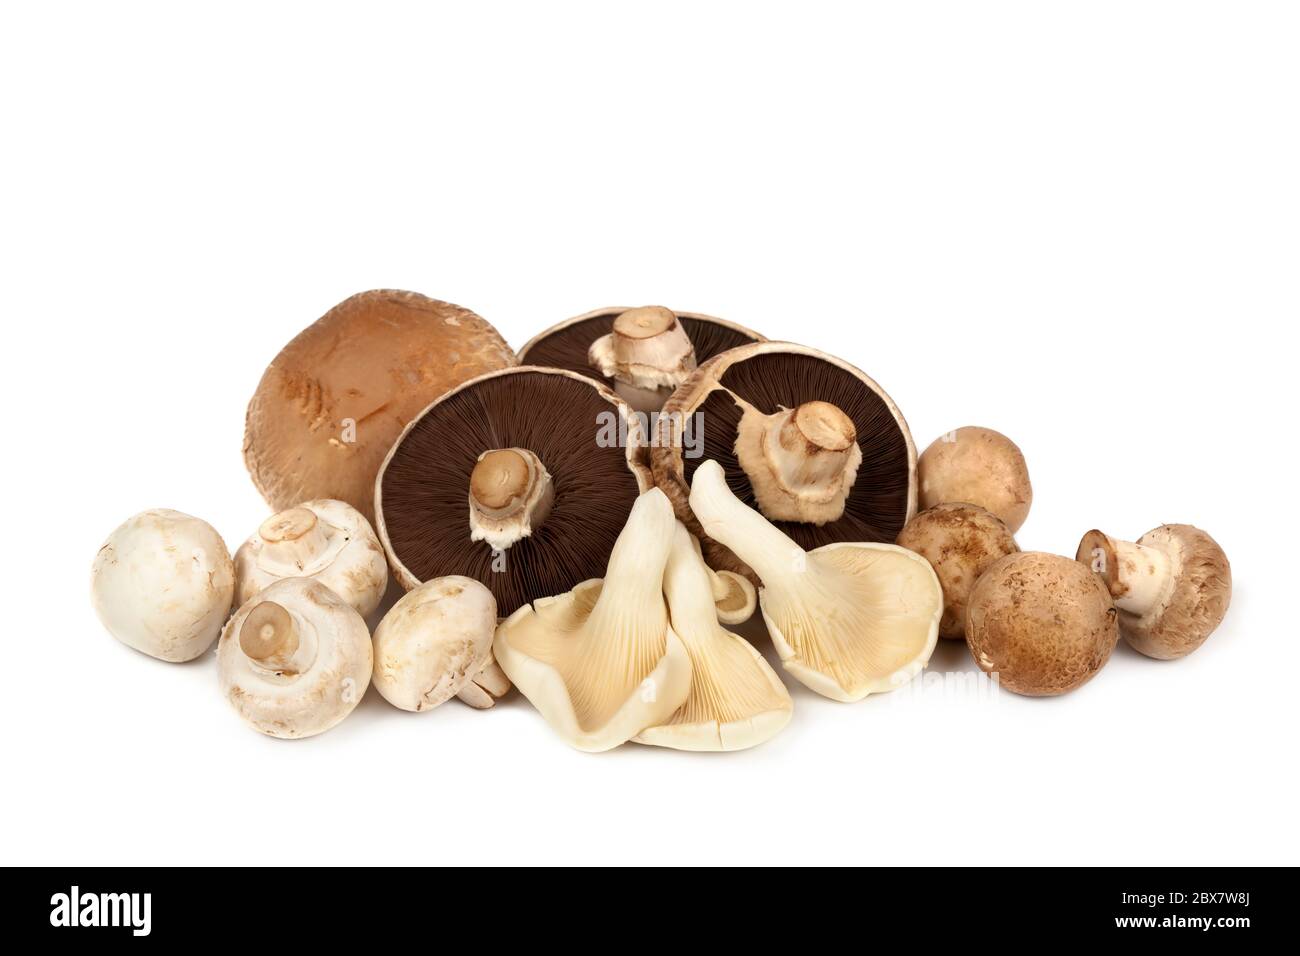 Pilzsorten auf weißem Hintergrund. Enthält portobello, Auster, Knopf und Braun. Stockfoto